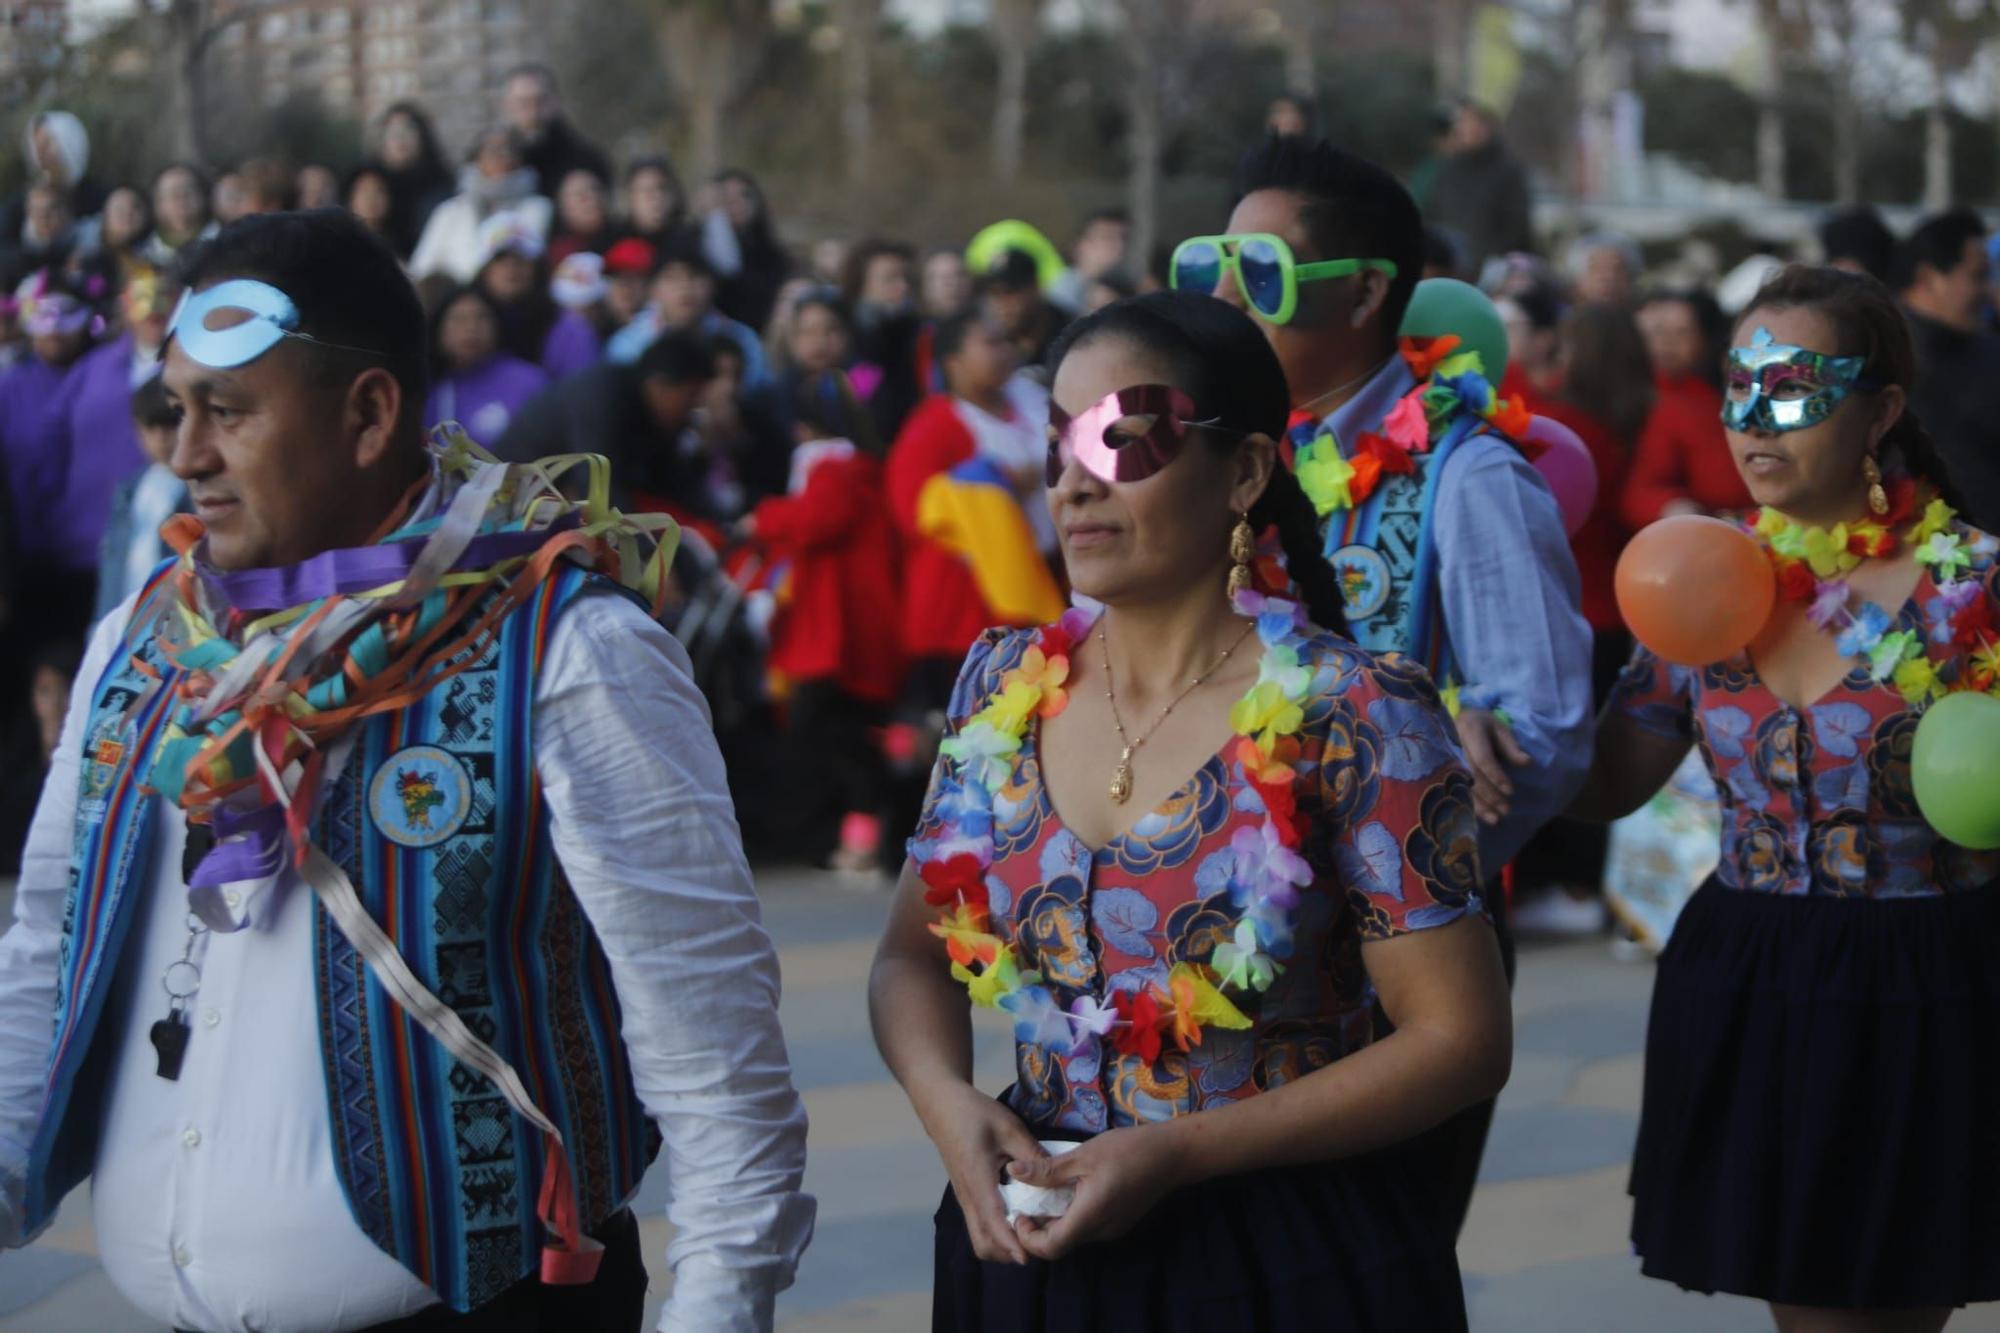 Russafa empieza su carnaval con el pregón a una semana del gran desfile